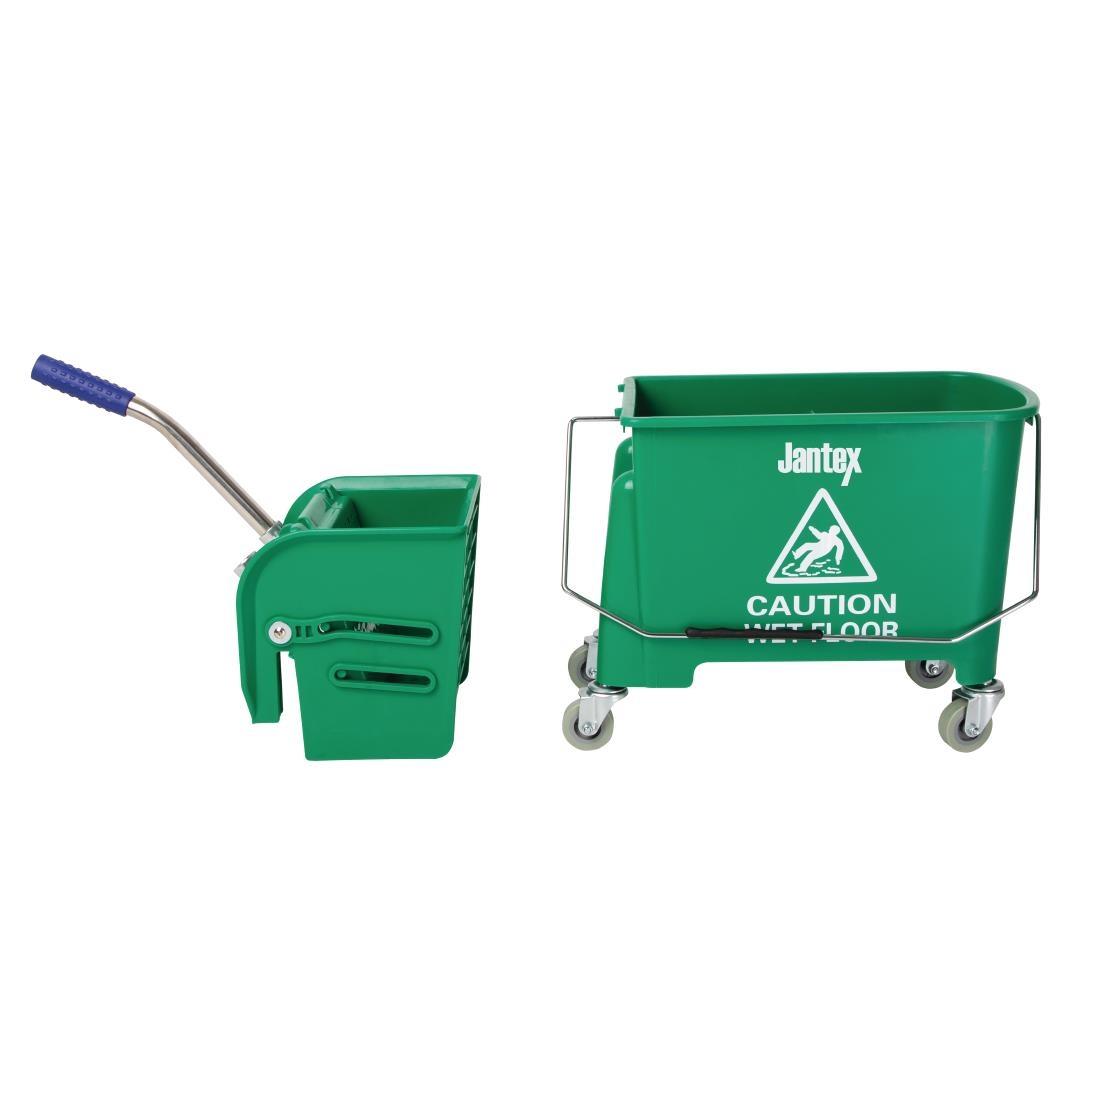 Jantex Kentucky Mop Bucket and Wringer 20Ltr Green - GK689  - 6